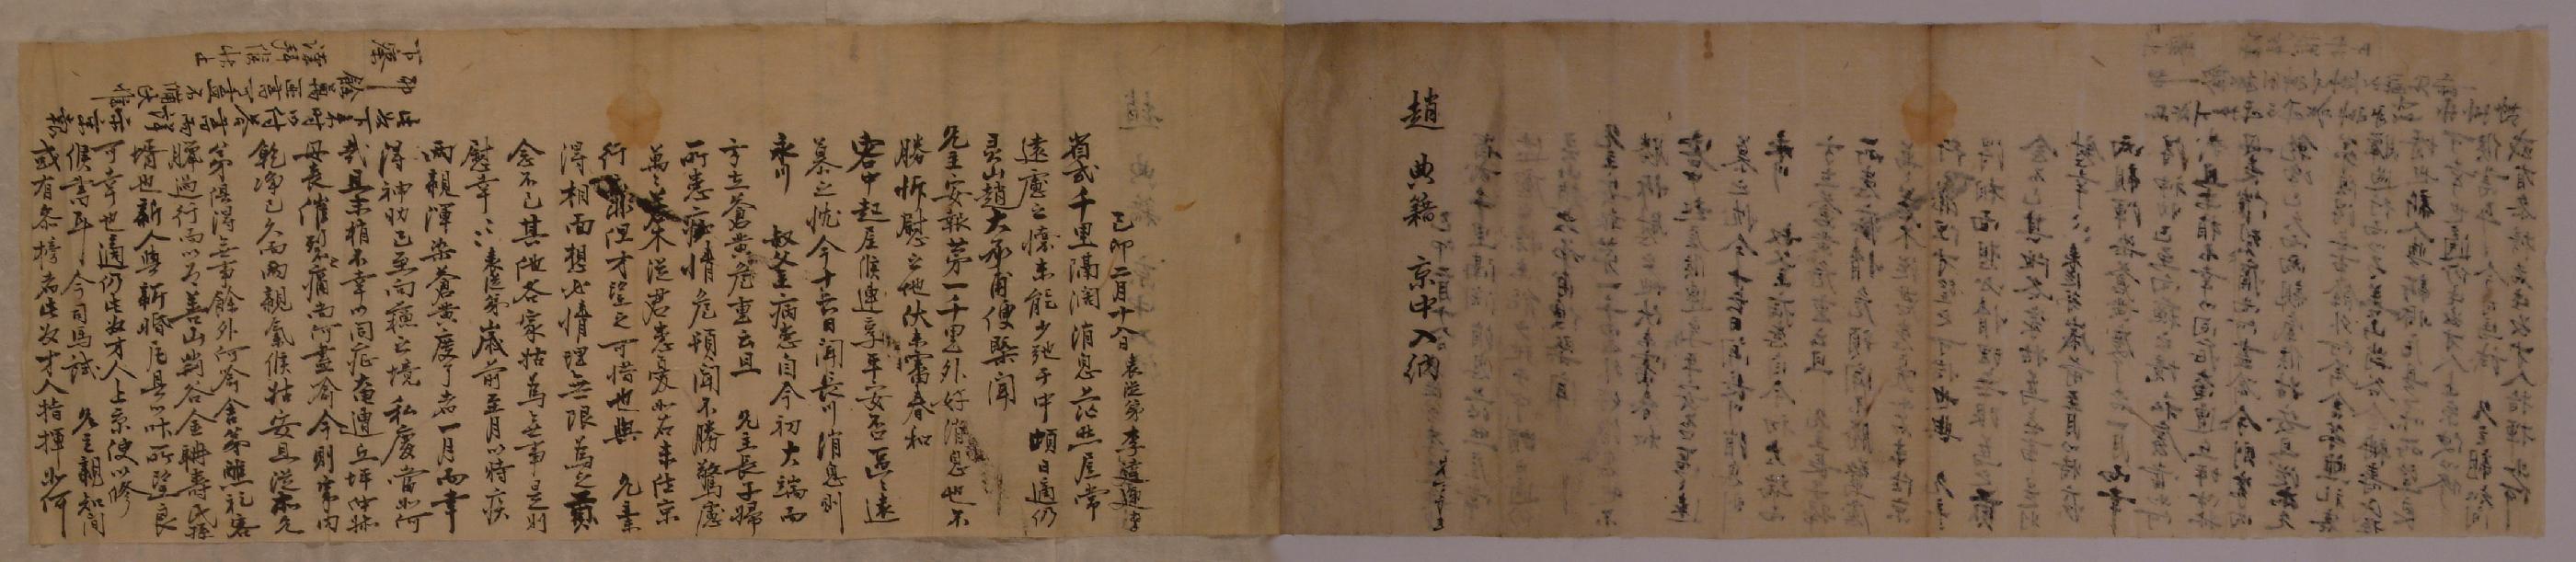 이원운(李遠運)이 1759년에 한양에 있는 조석우(趙錫愚)에게 집안 소식을 담아 보낸 편지